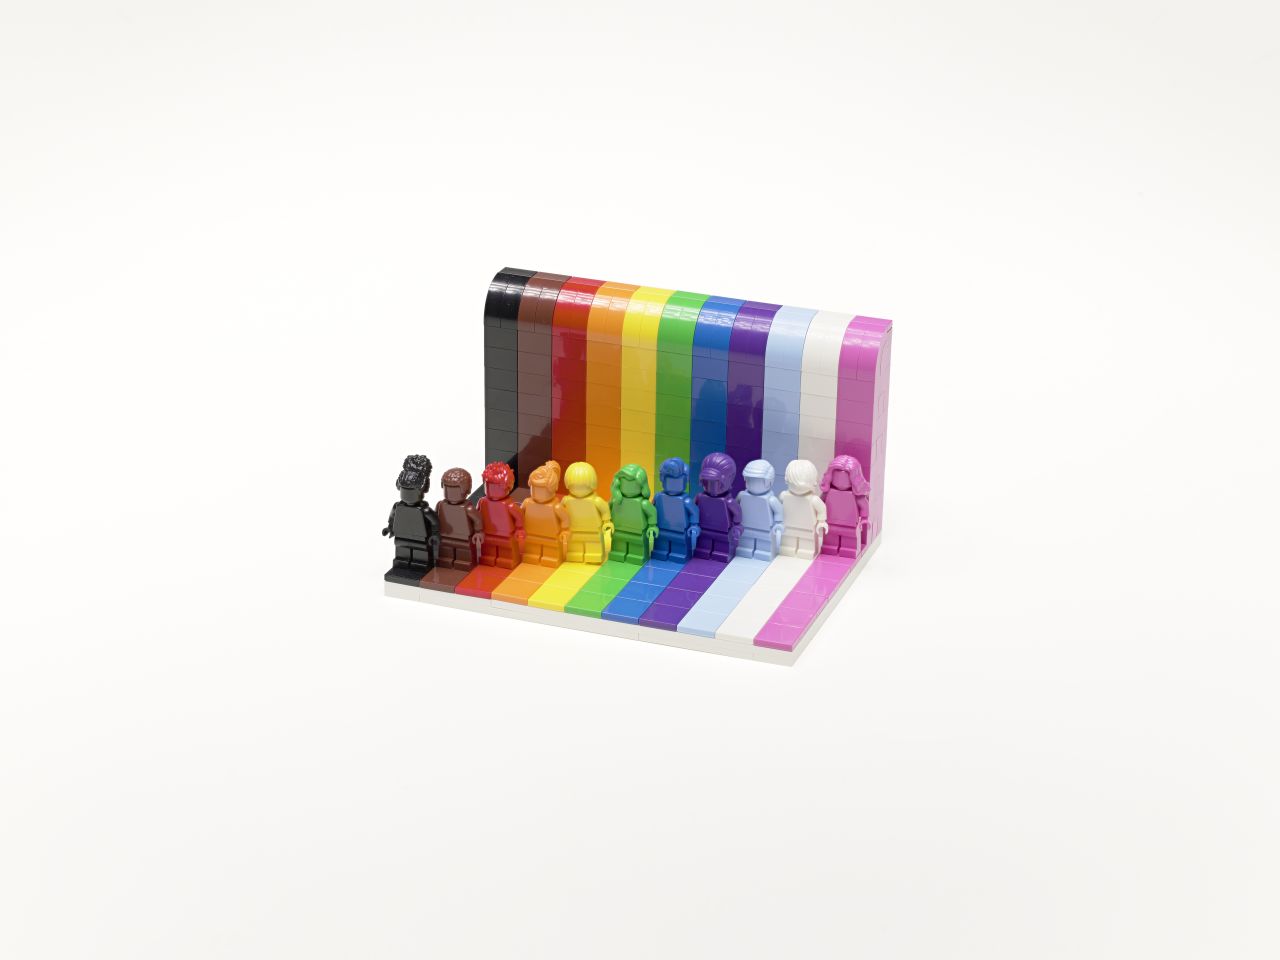 Unterschiedliche Lego-Spielfiguren in bunten Farben stellvertretend für Diversität